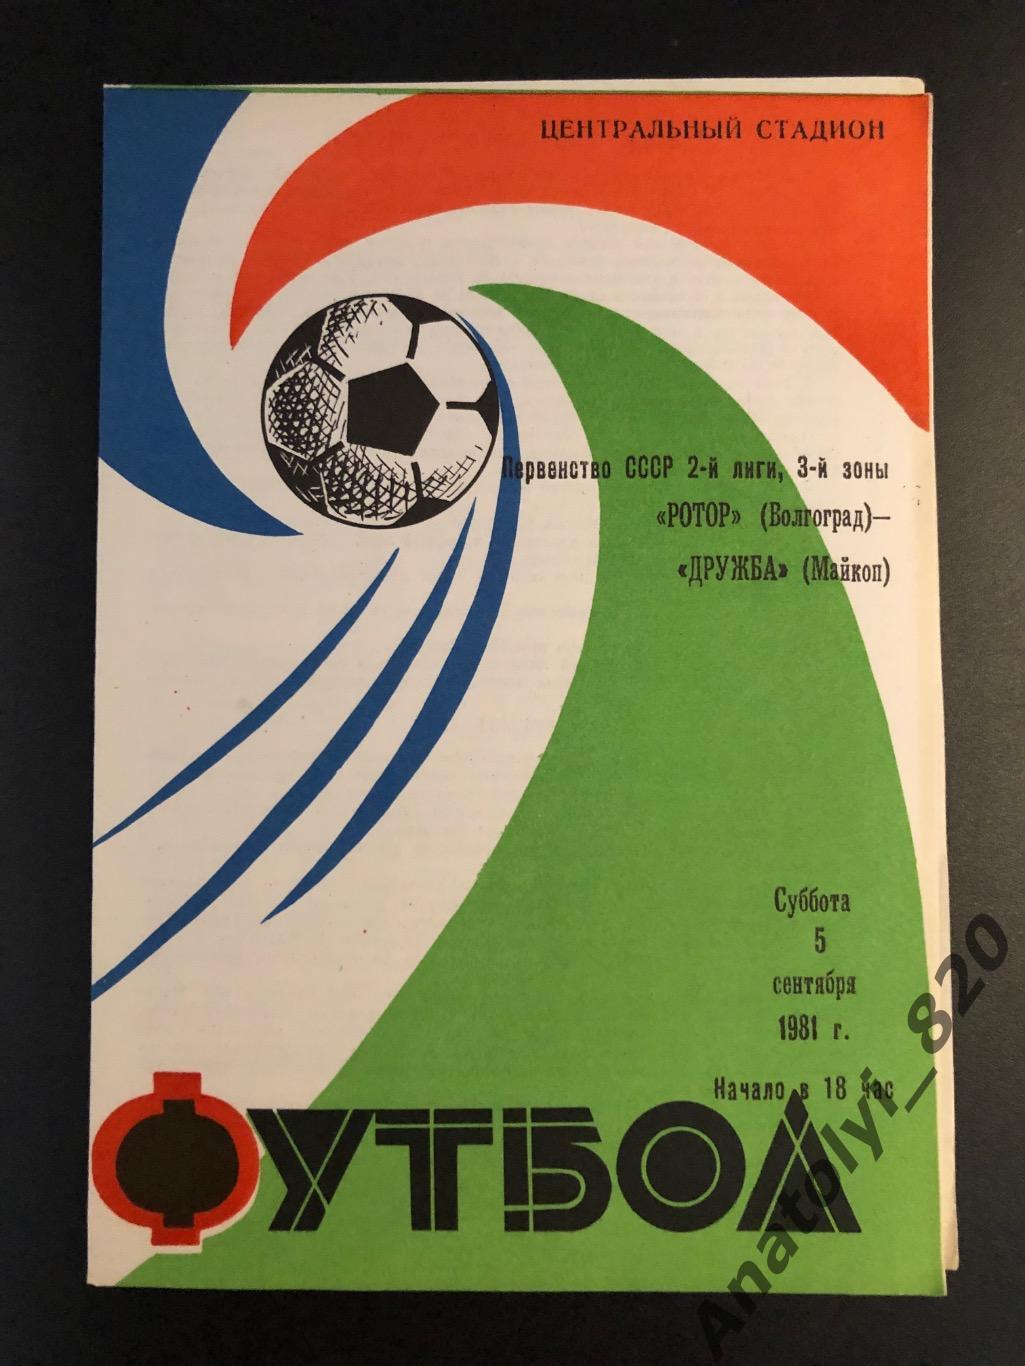 Ротор Волгоград - Дружба Майкоп, 05.09.1981